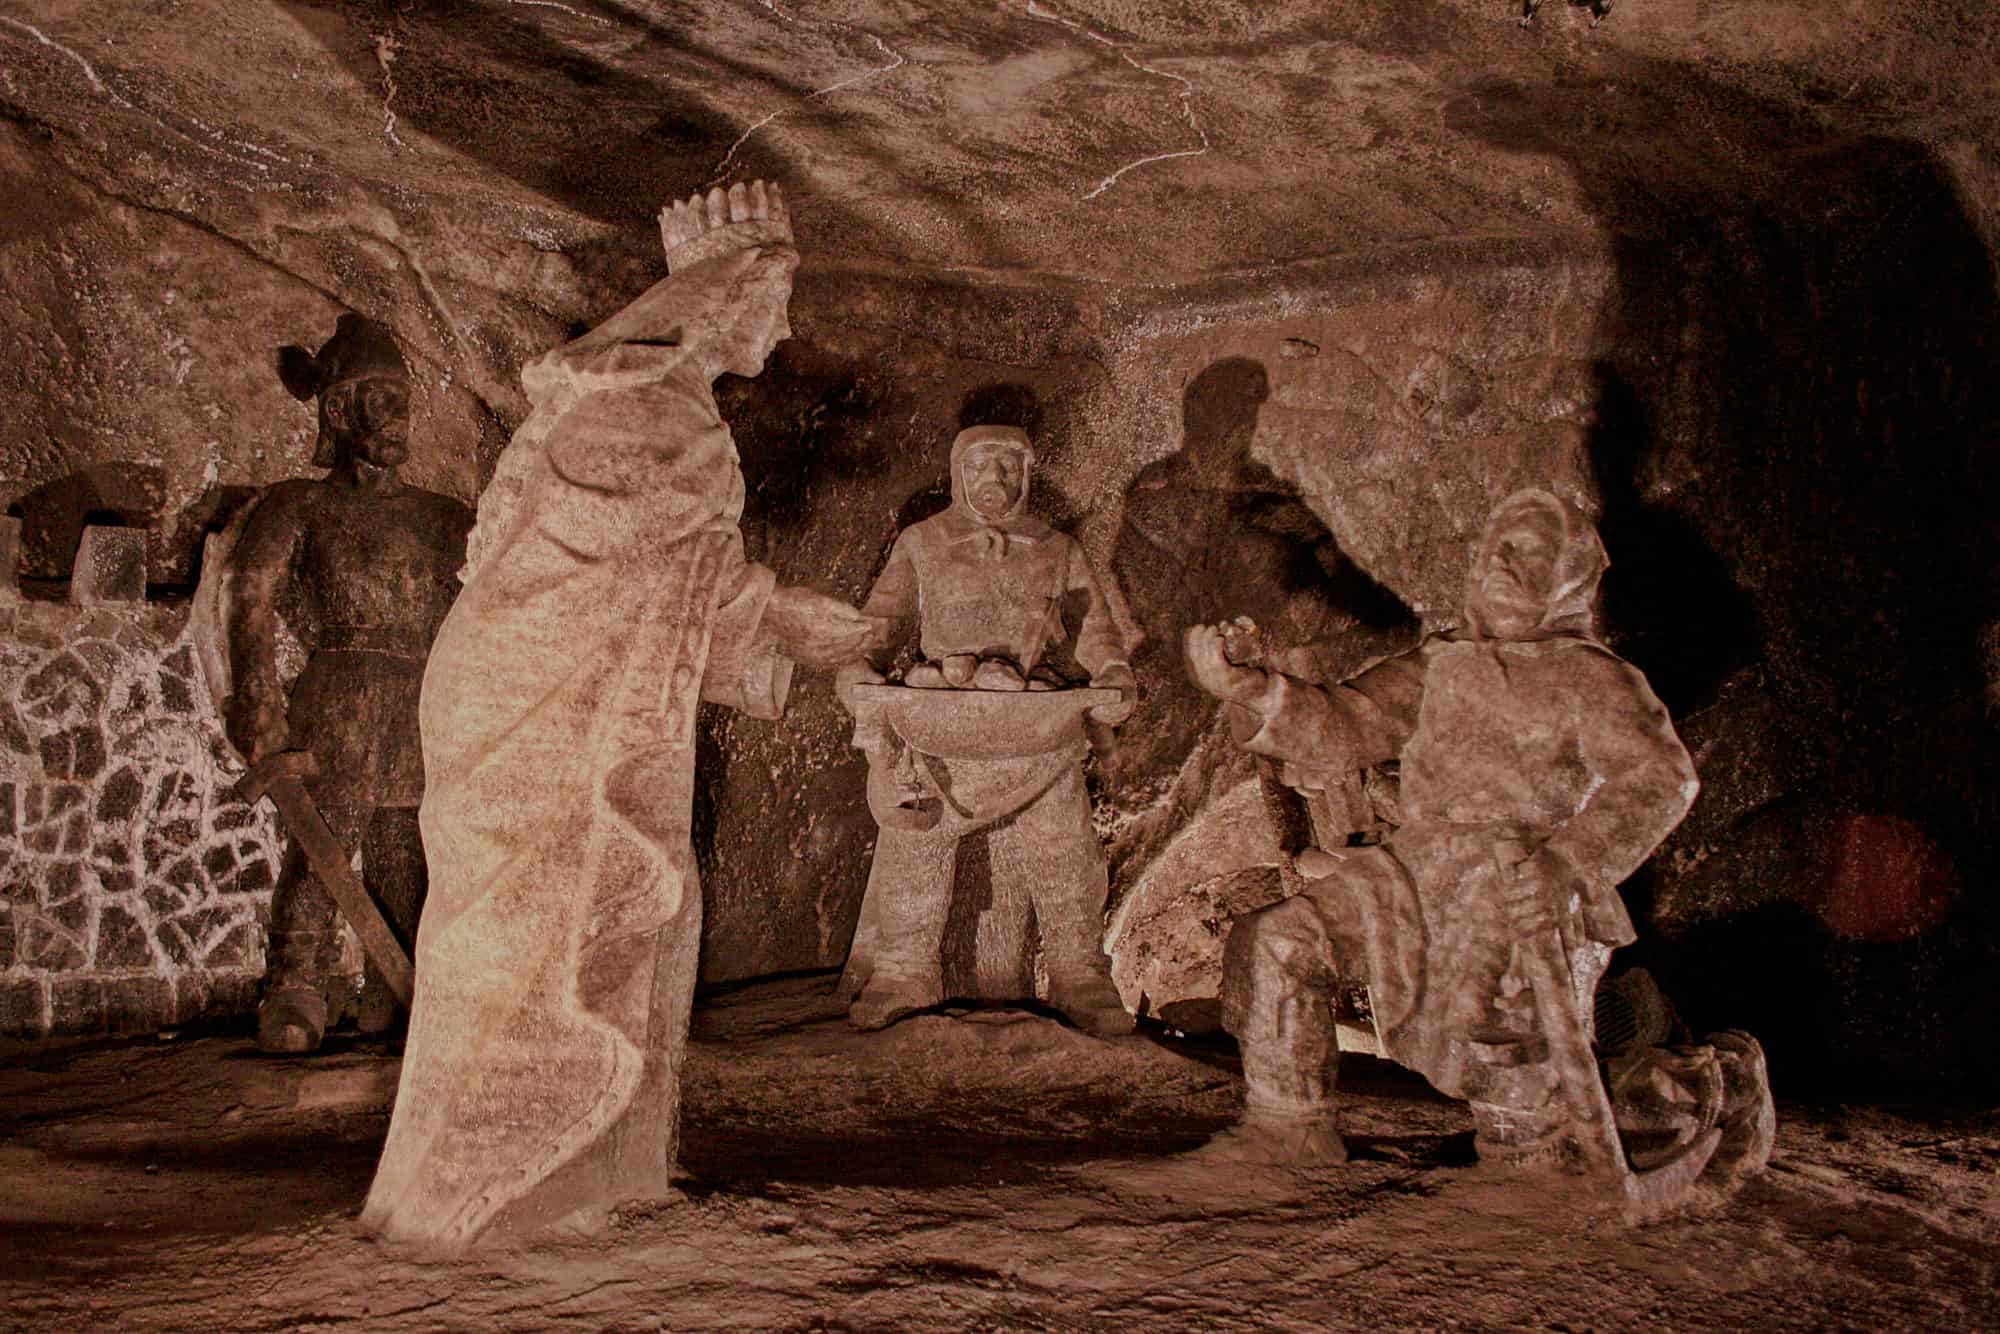 Wieliczka Salt Mine near Krakow - Princess of Hungary Statue